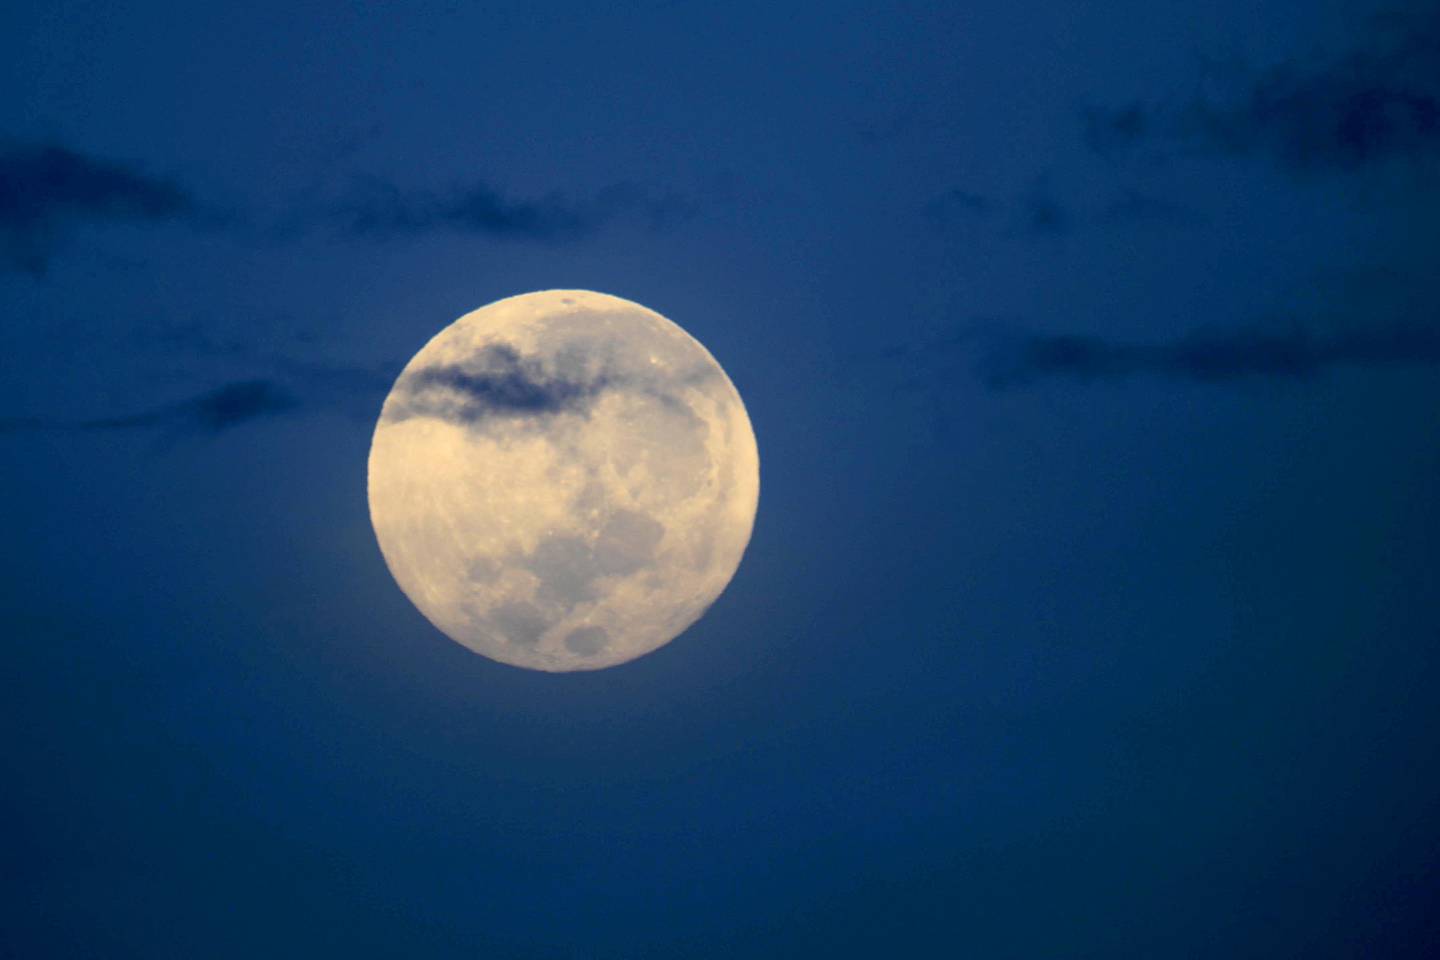 Así se despidió la superluna, sobre el aeropuerto Juan Santamaría, este jueves por la mañana. Fue la segunda de dos fases de luna llena en el mes de agosto que formó parte de un fenómeno poco frecuente al que se conoce como Luna Azul, aunque no tiene que ver con su color. El término en realidad se utiliza cuando se producen dos lunas llenas en un mismo mes del calendario, un evento poco común que solo puede ocurrir en los meses más largos. La próxima “luna azul” se espera para diciembre de 2024, otro mes con 31 días, y se repetirá hasta mayo de 2026.